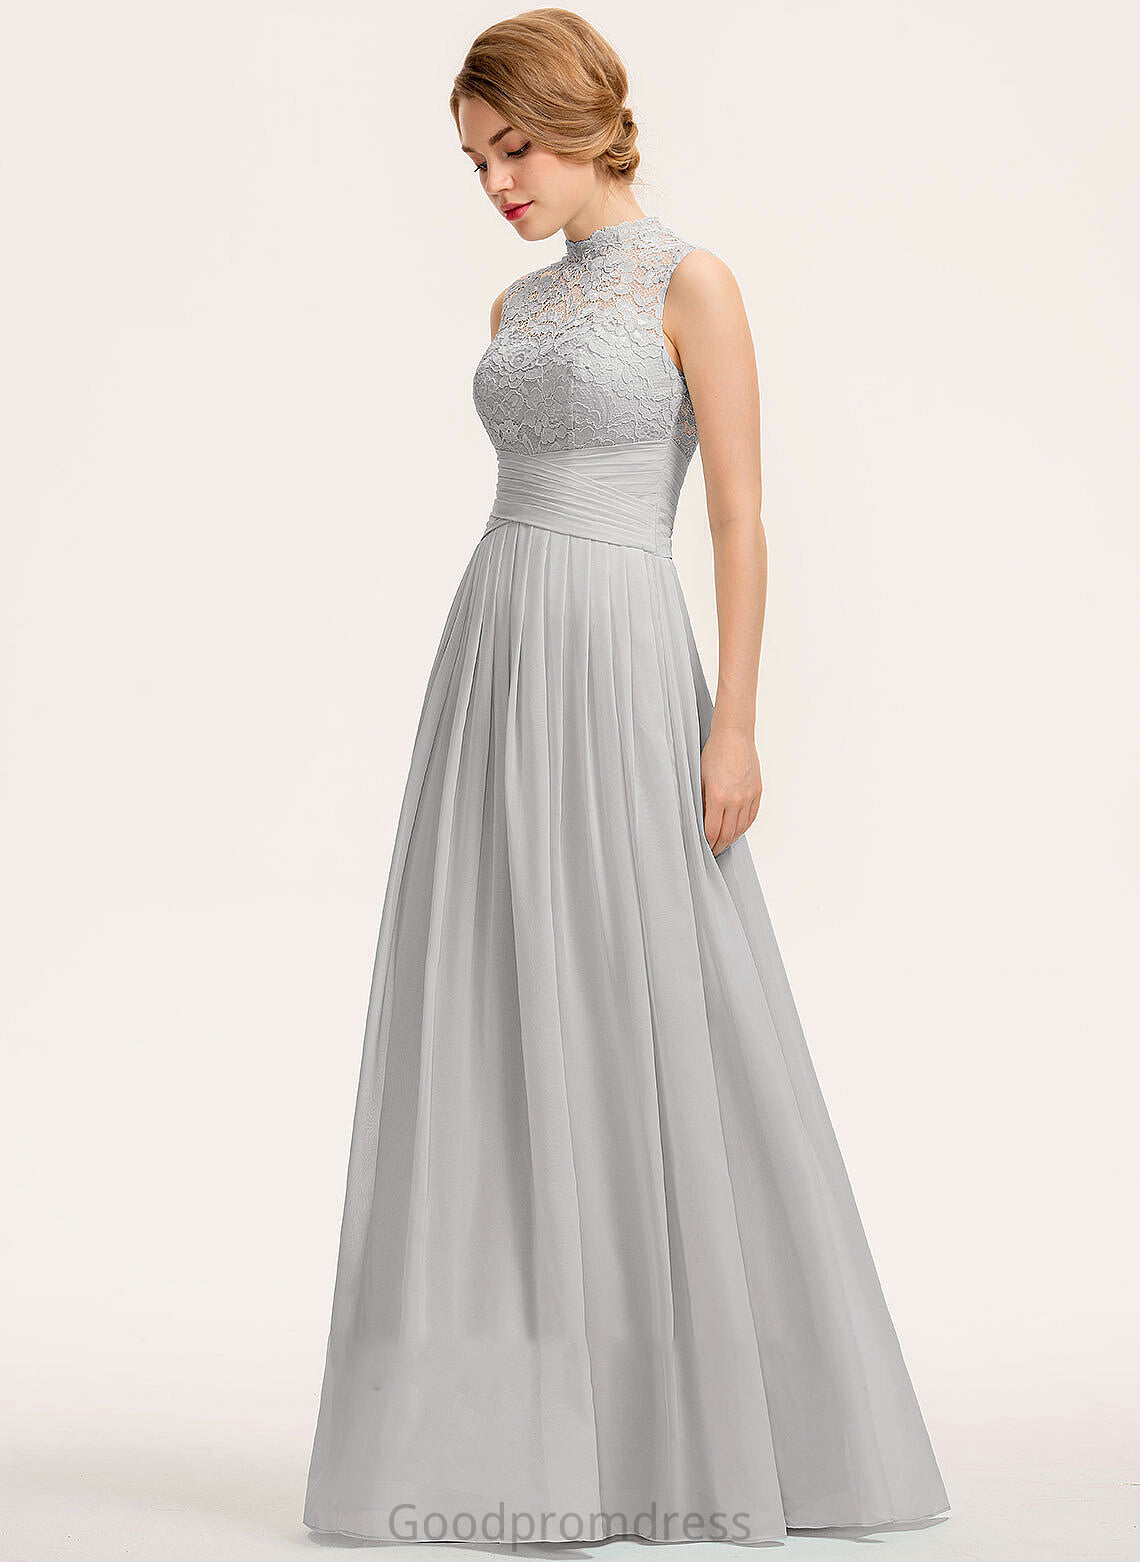 Embellishment HighNeck A-Line Ruffle Floor-Length Neckline Silhouette Fabric Length Susan A-Line/Princess Natural Waist Bridesmaid Dresses